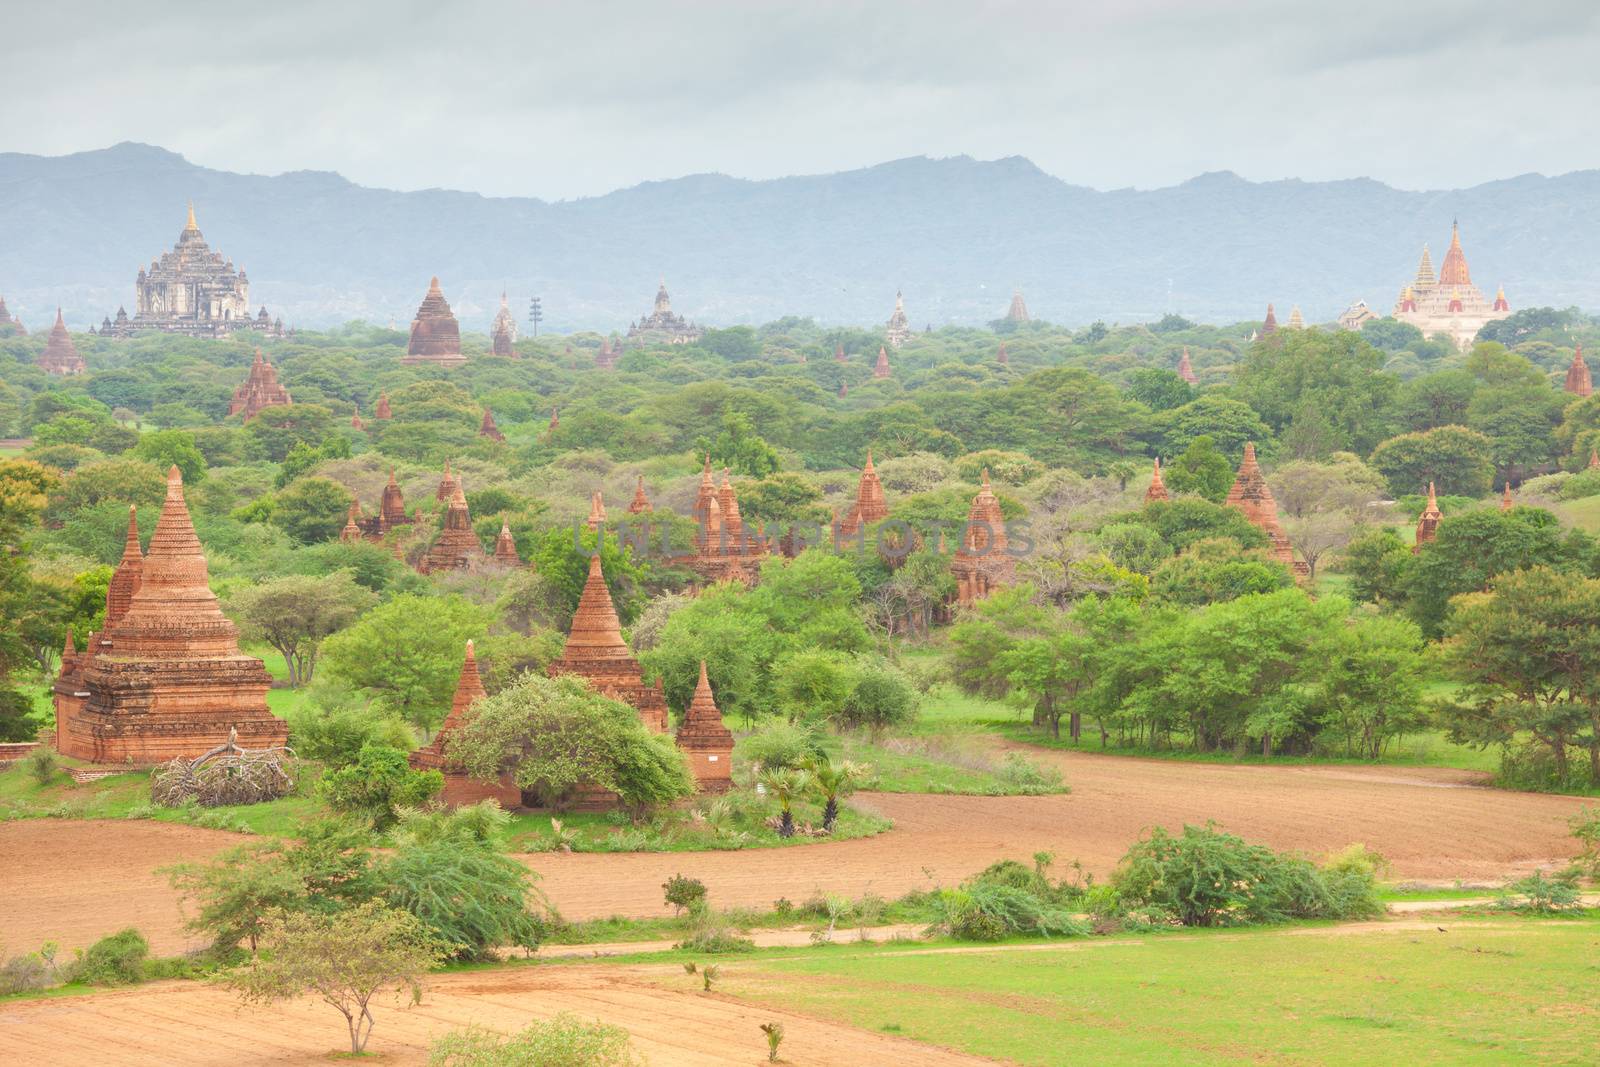 Ancient pagodas in Bagan Mandalay, Myanmar by witthaya